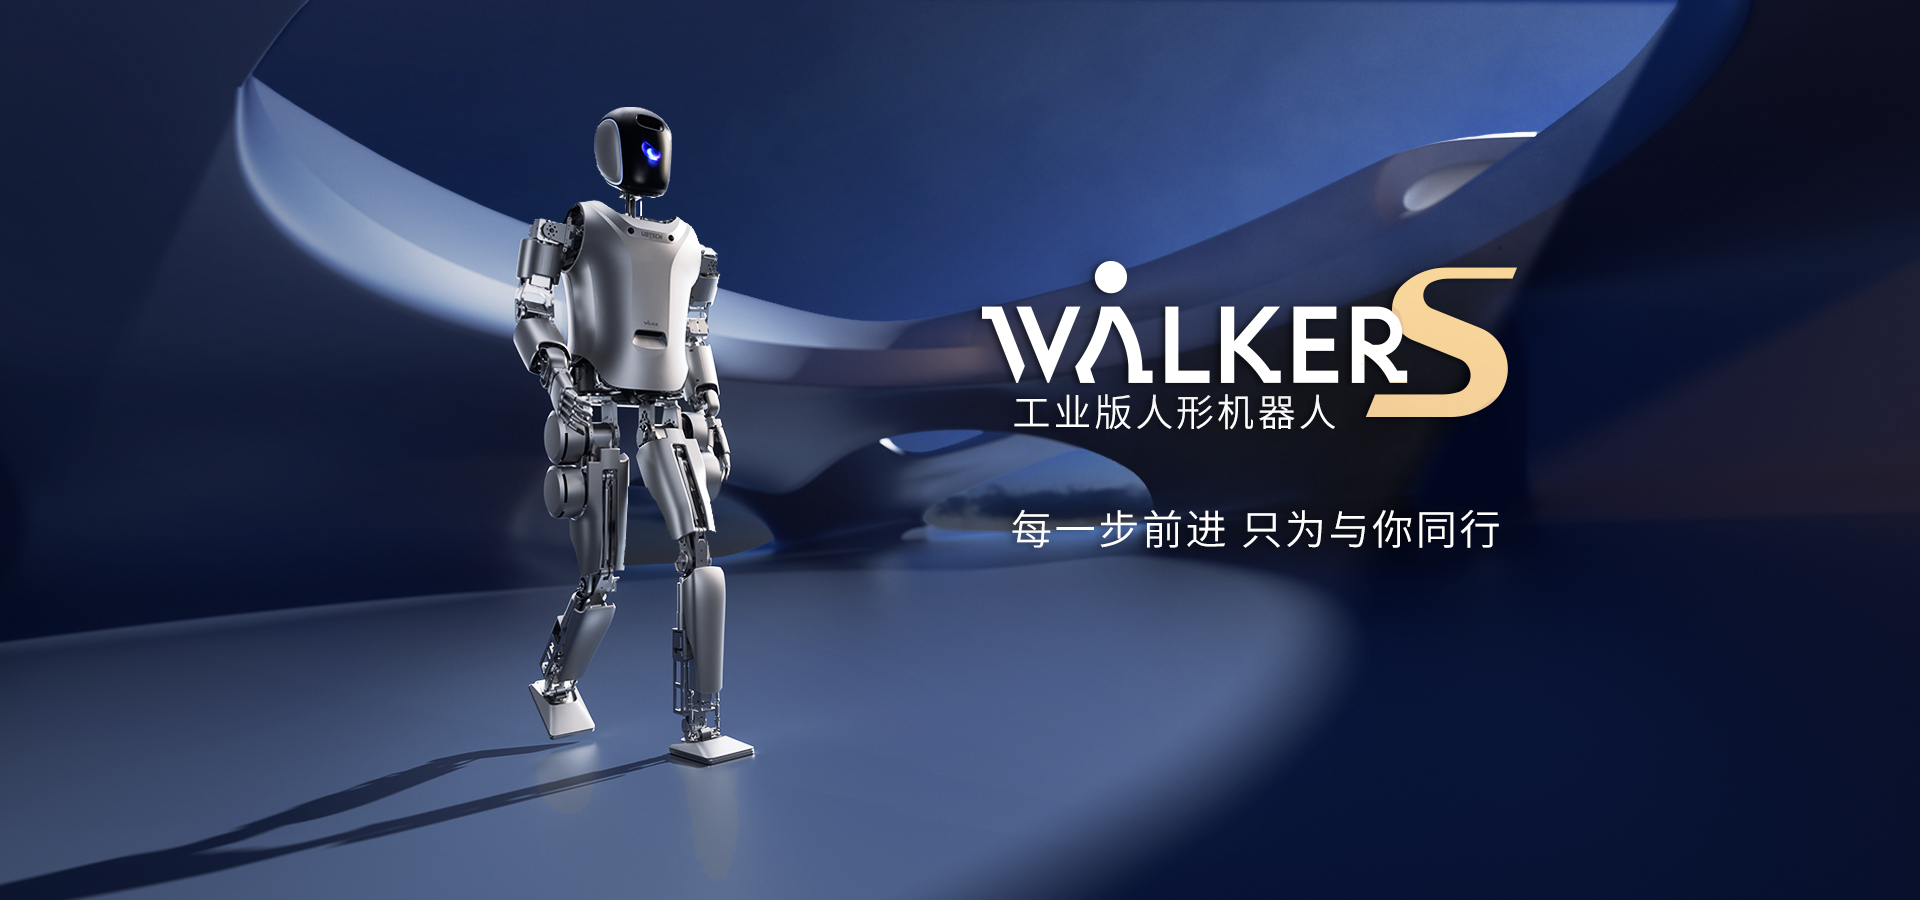 Walker-S_PC2.jpg